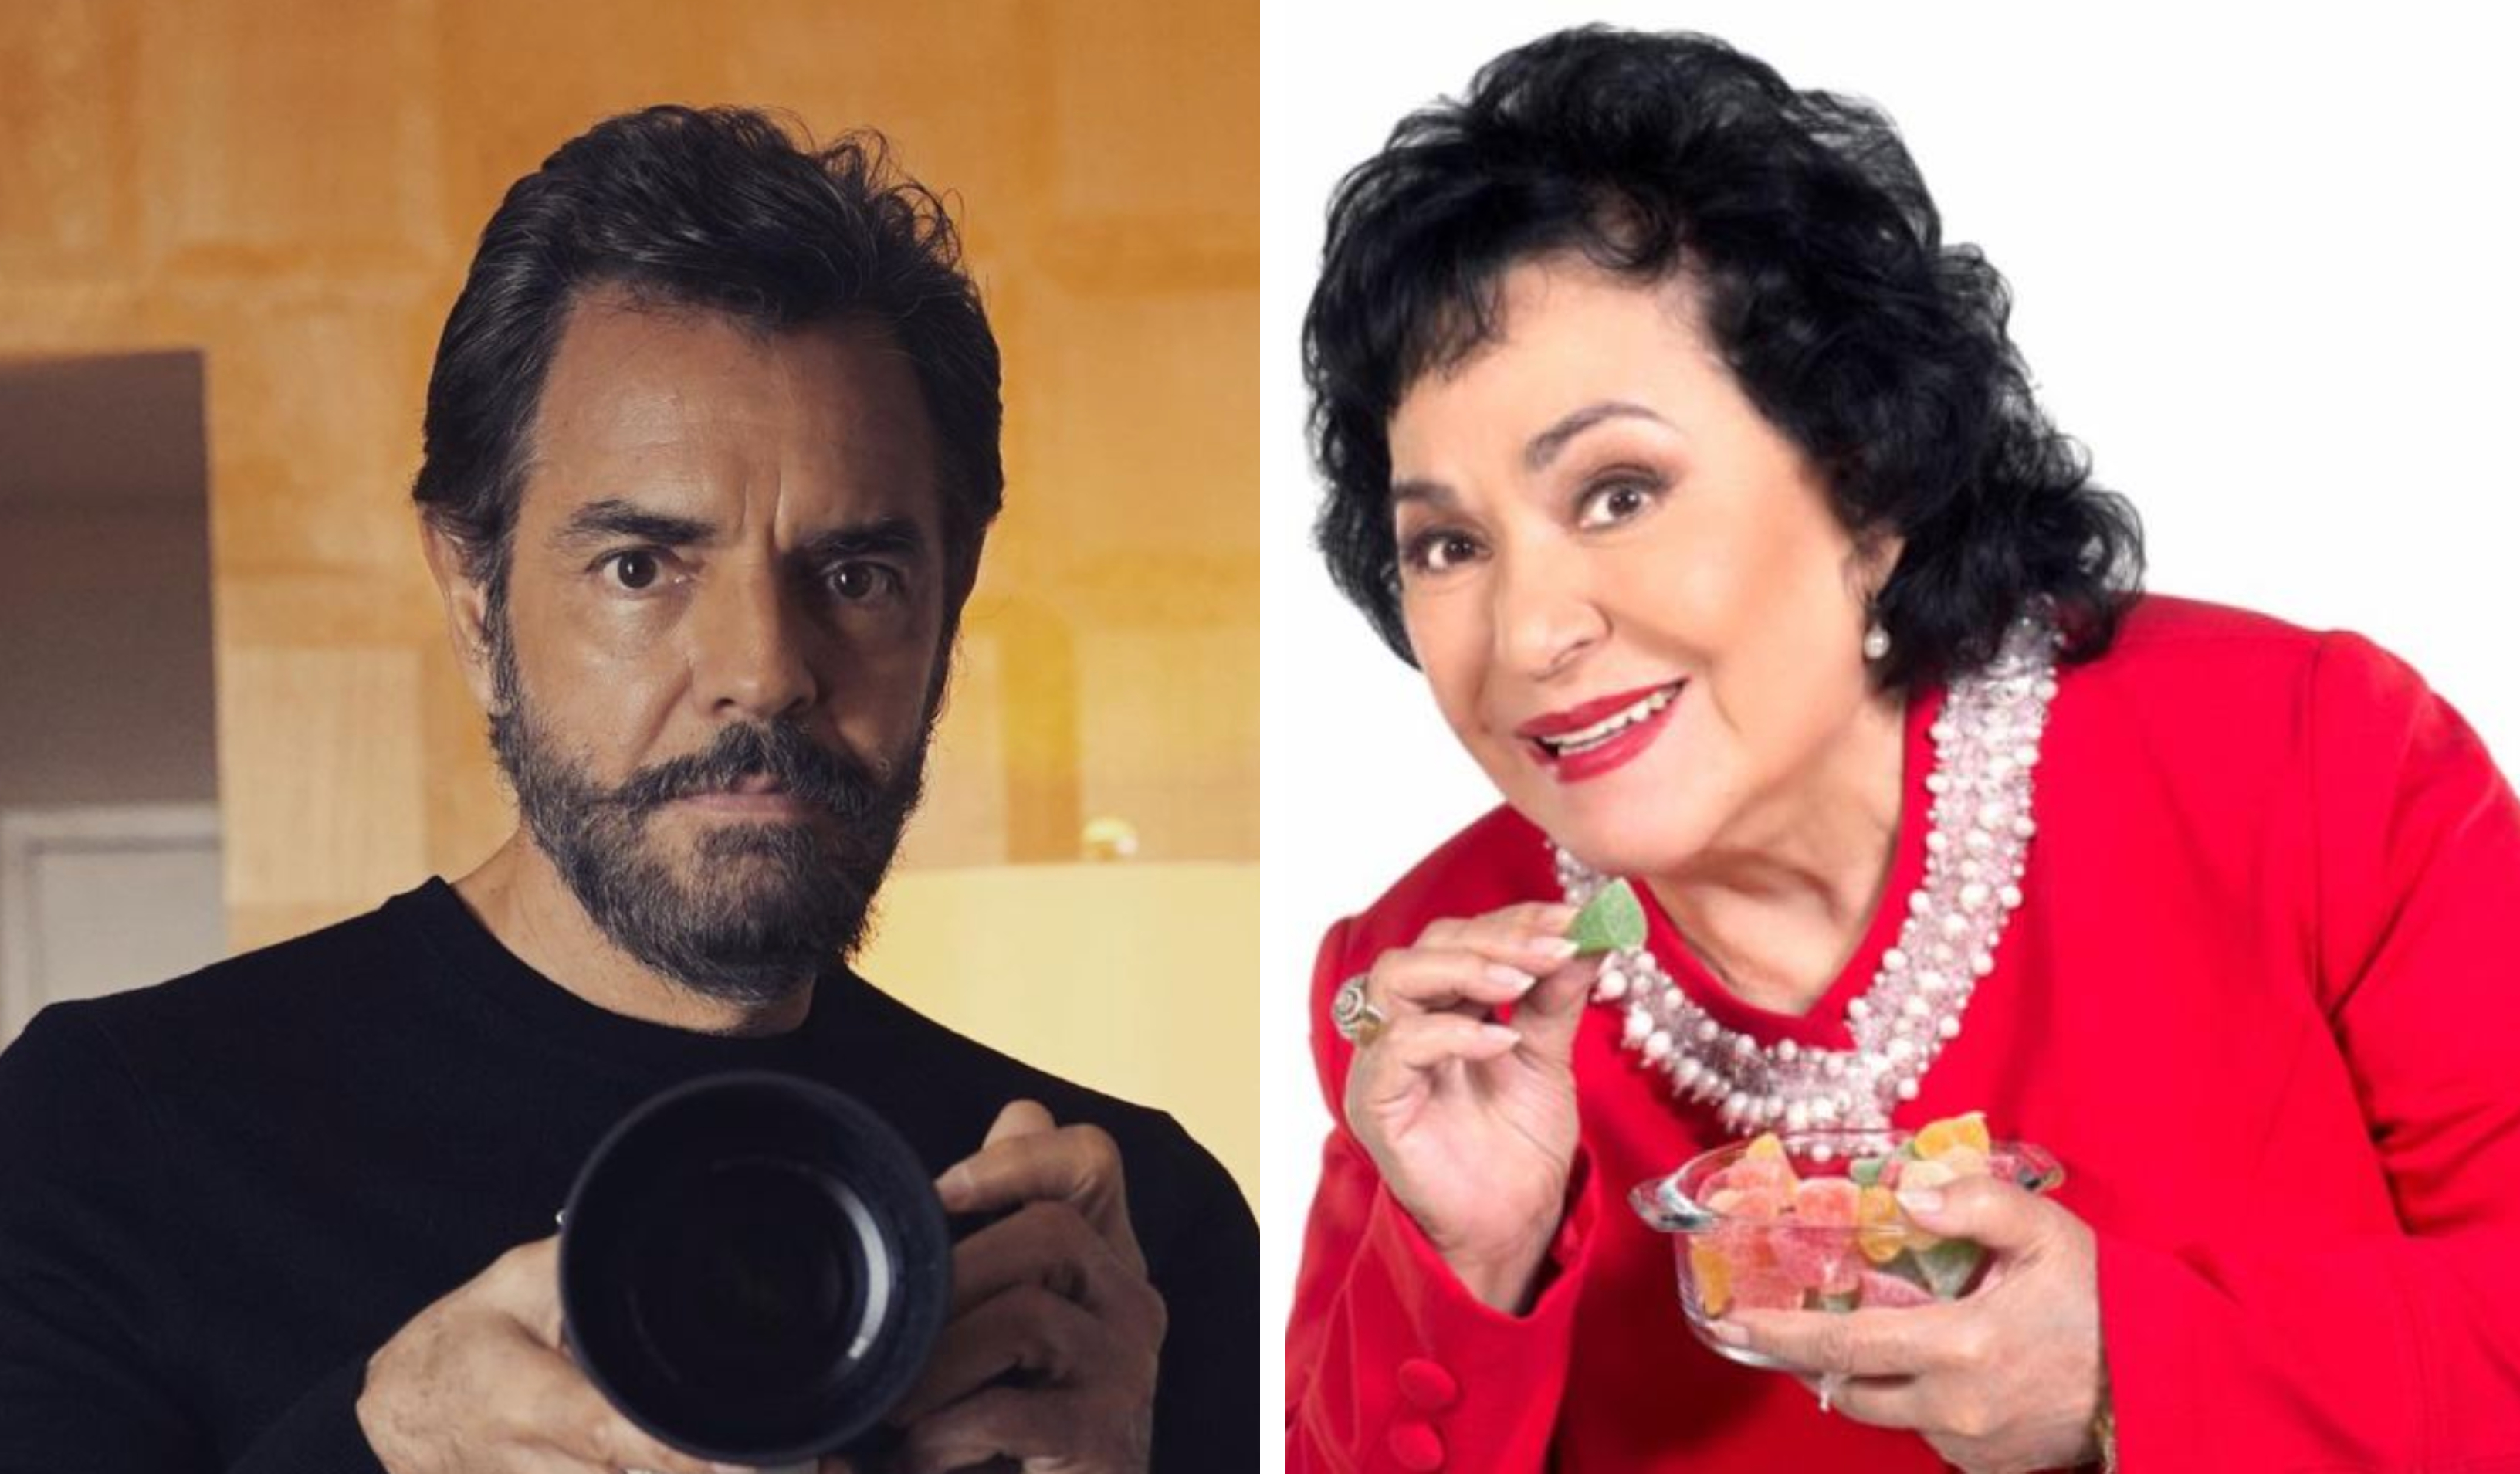 La relación entre Eugenio Derbez y Carmen Salinas siempre ha sido cercana. (Foto Prensa Libre: @ederbez/Instagram y Hemeroteca PL)